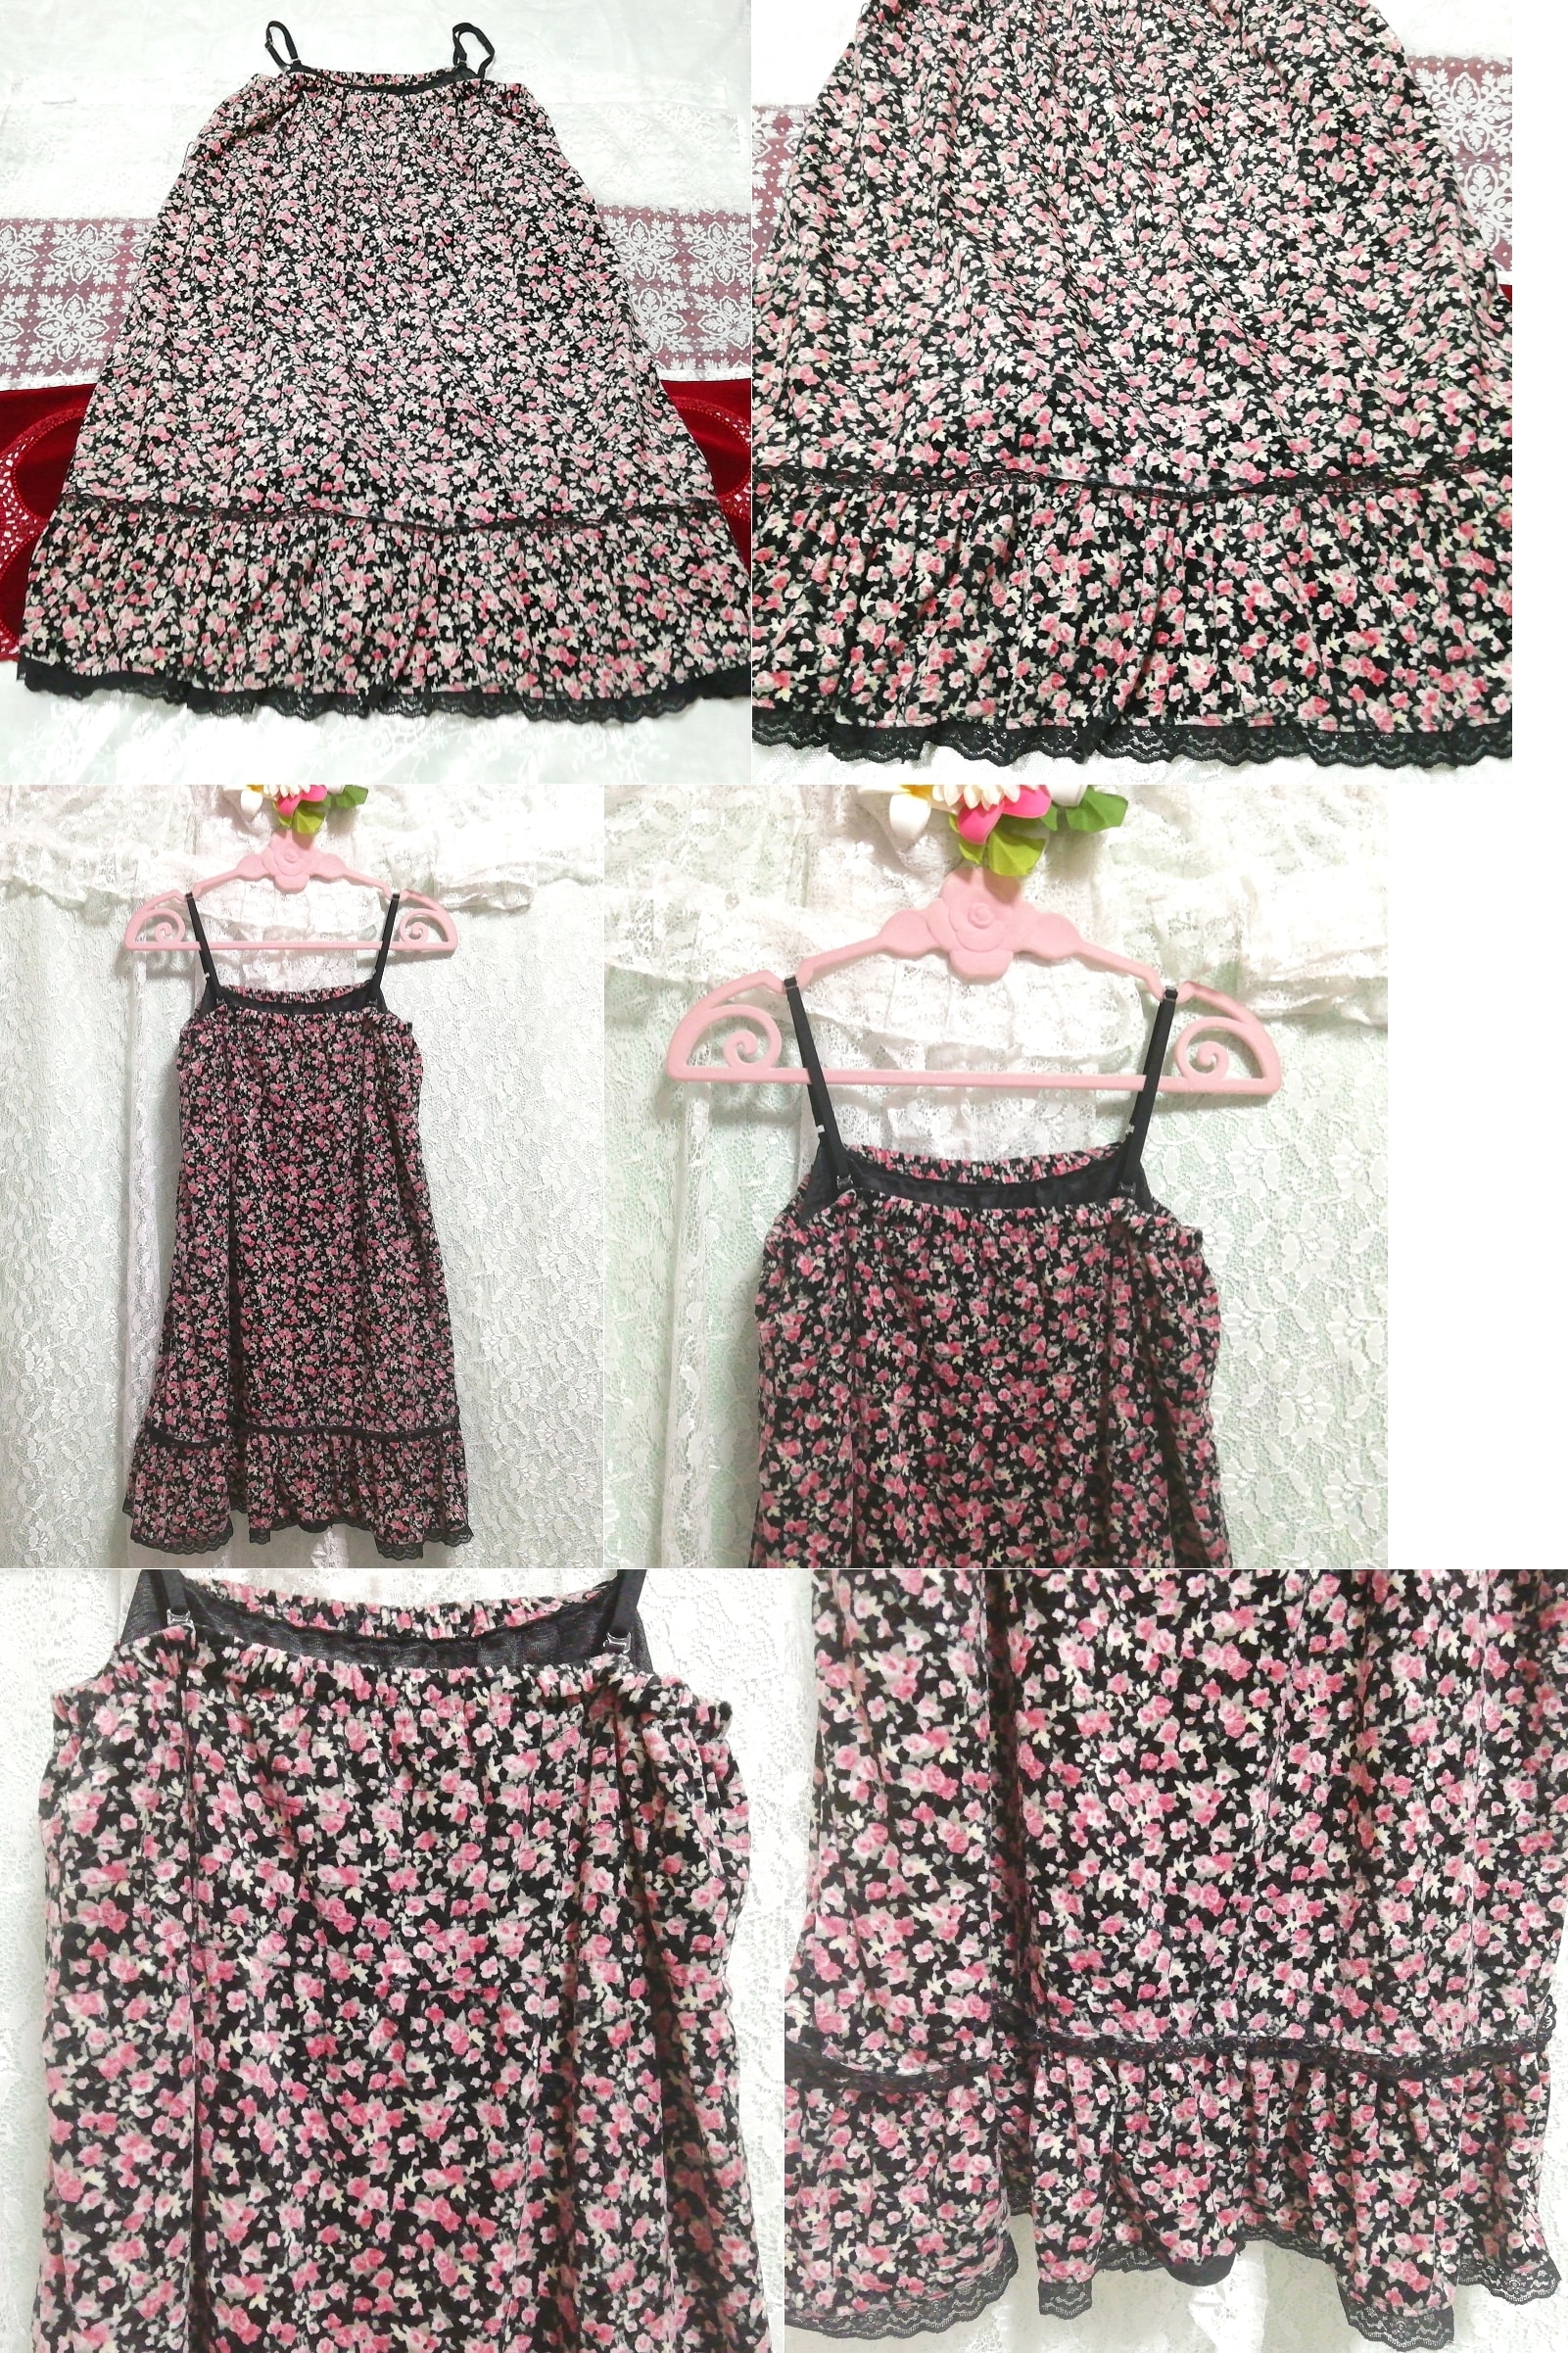 블랙 핑크 벨루어 네글리제 나이트가운 캐미솔 스커트 드레스, 무릎길이 스커트, m 사이즈